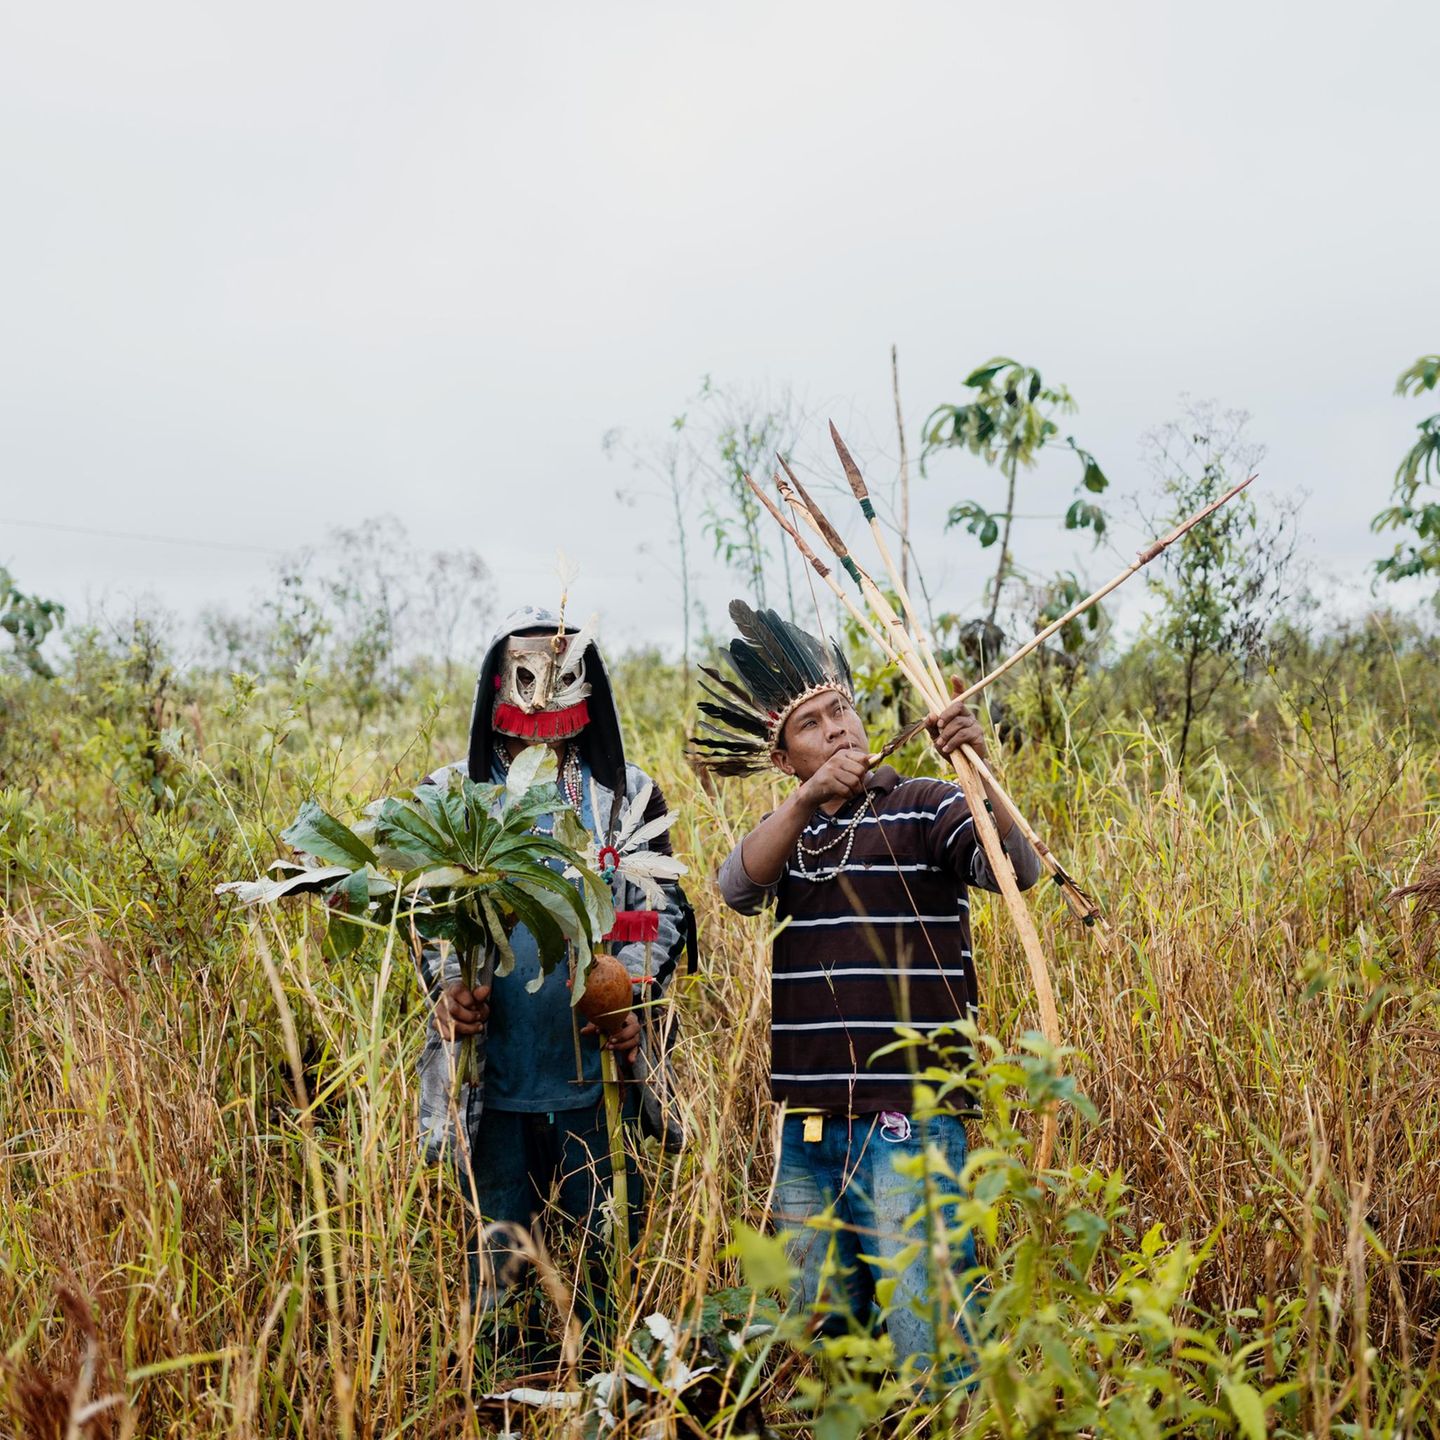 Männer der Guarani-Kaiowá sind unterwegs, um raue Blätter des Ameisenbaums zu sammeln. Sie wollen damit ein xiru bearbeiten. Den Bogen und die Pfeile mit Steinspitzen verwenden sie zur Jagd